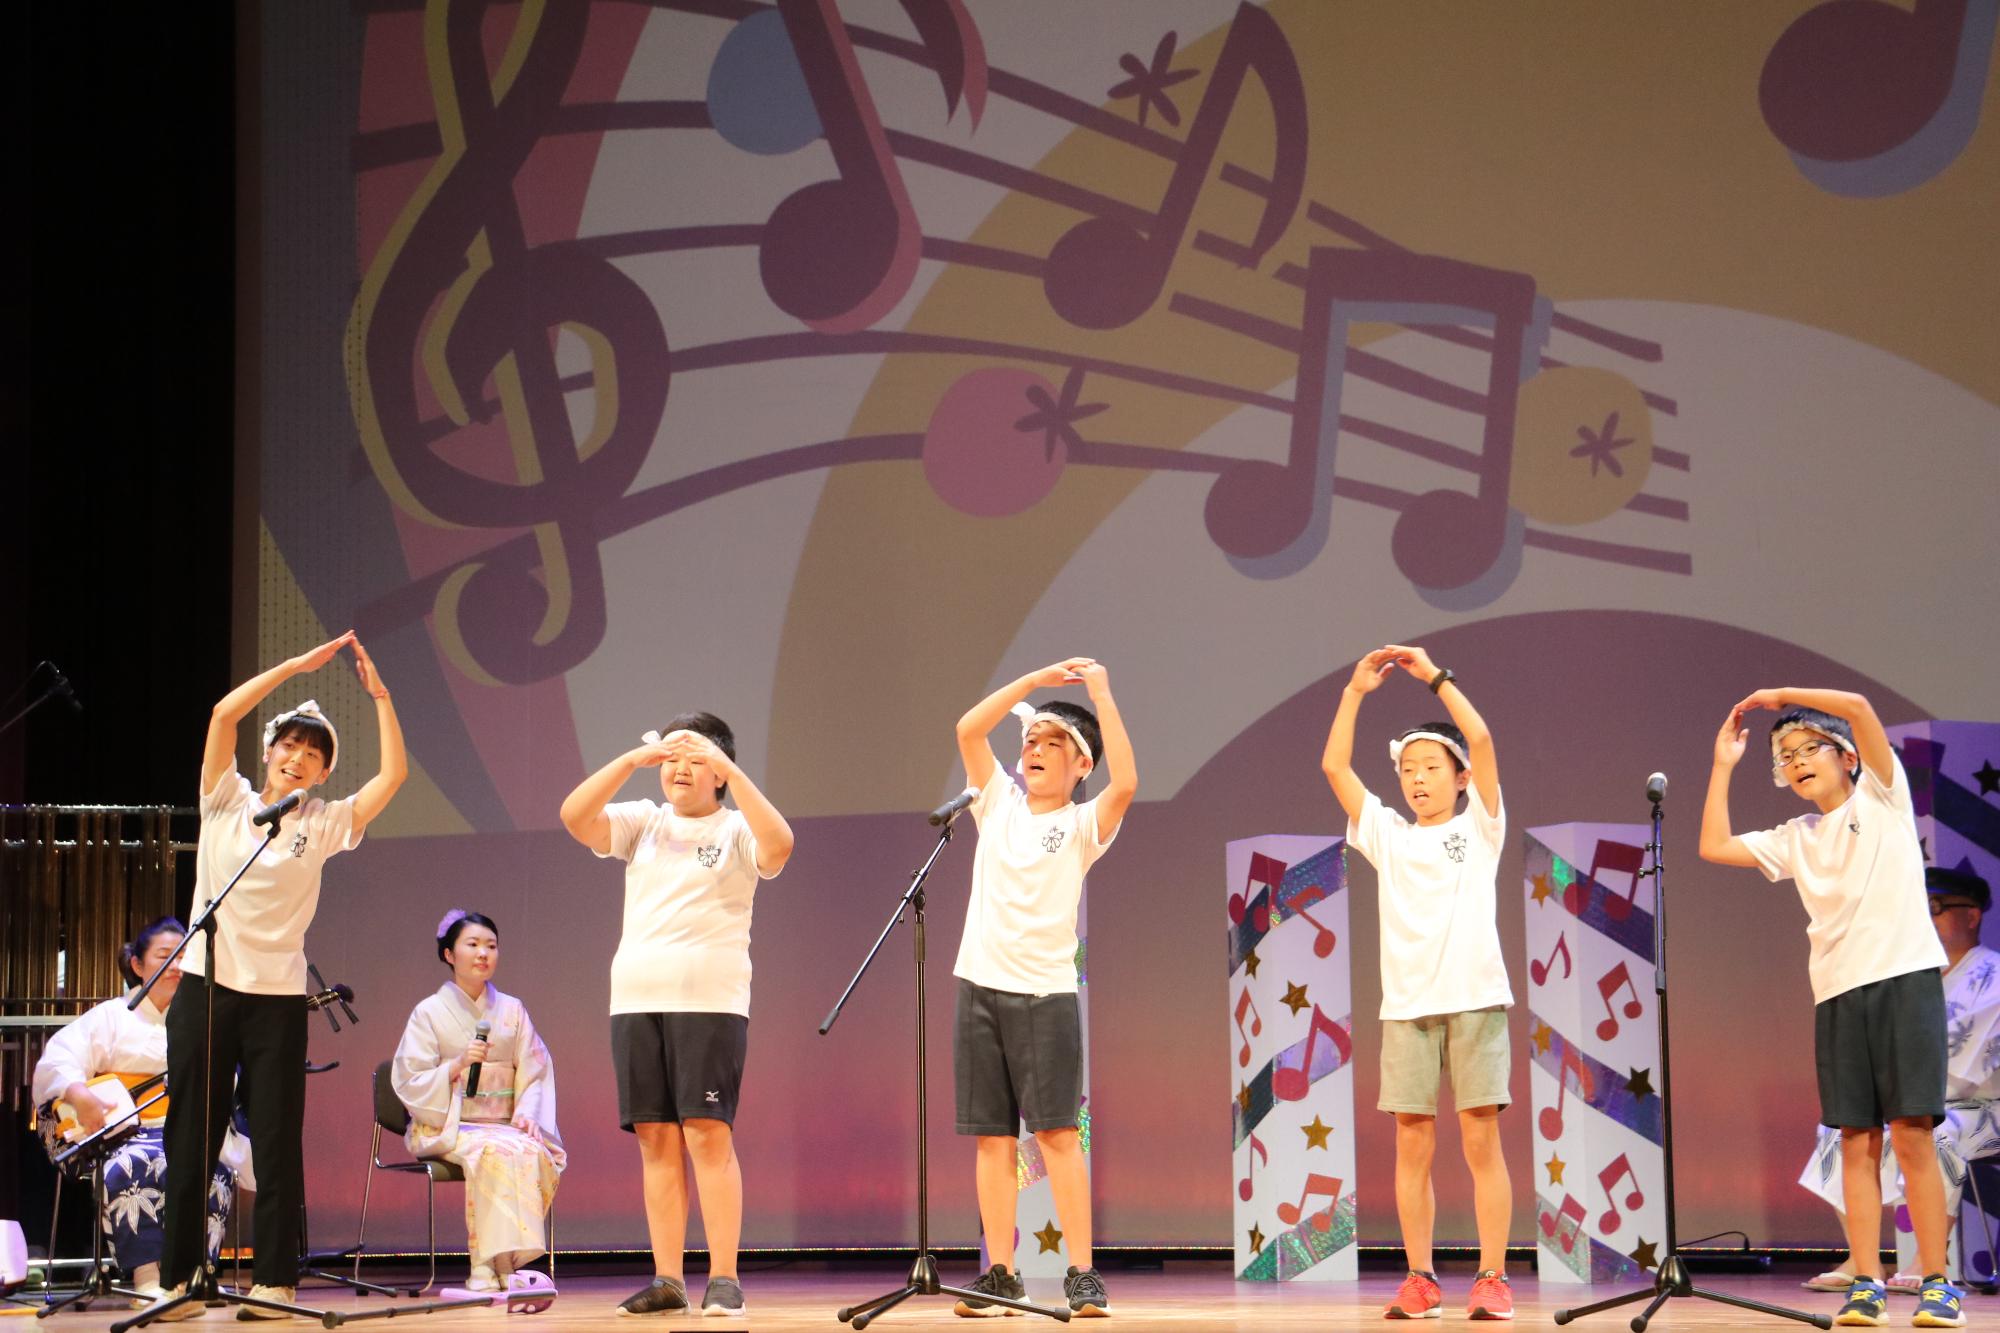 デカンショのど自慢に出場された篠山小学校チームこども4人と先生が歌っている